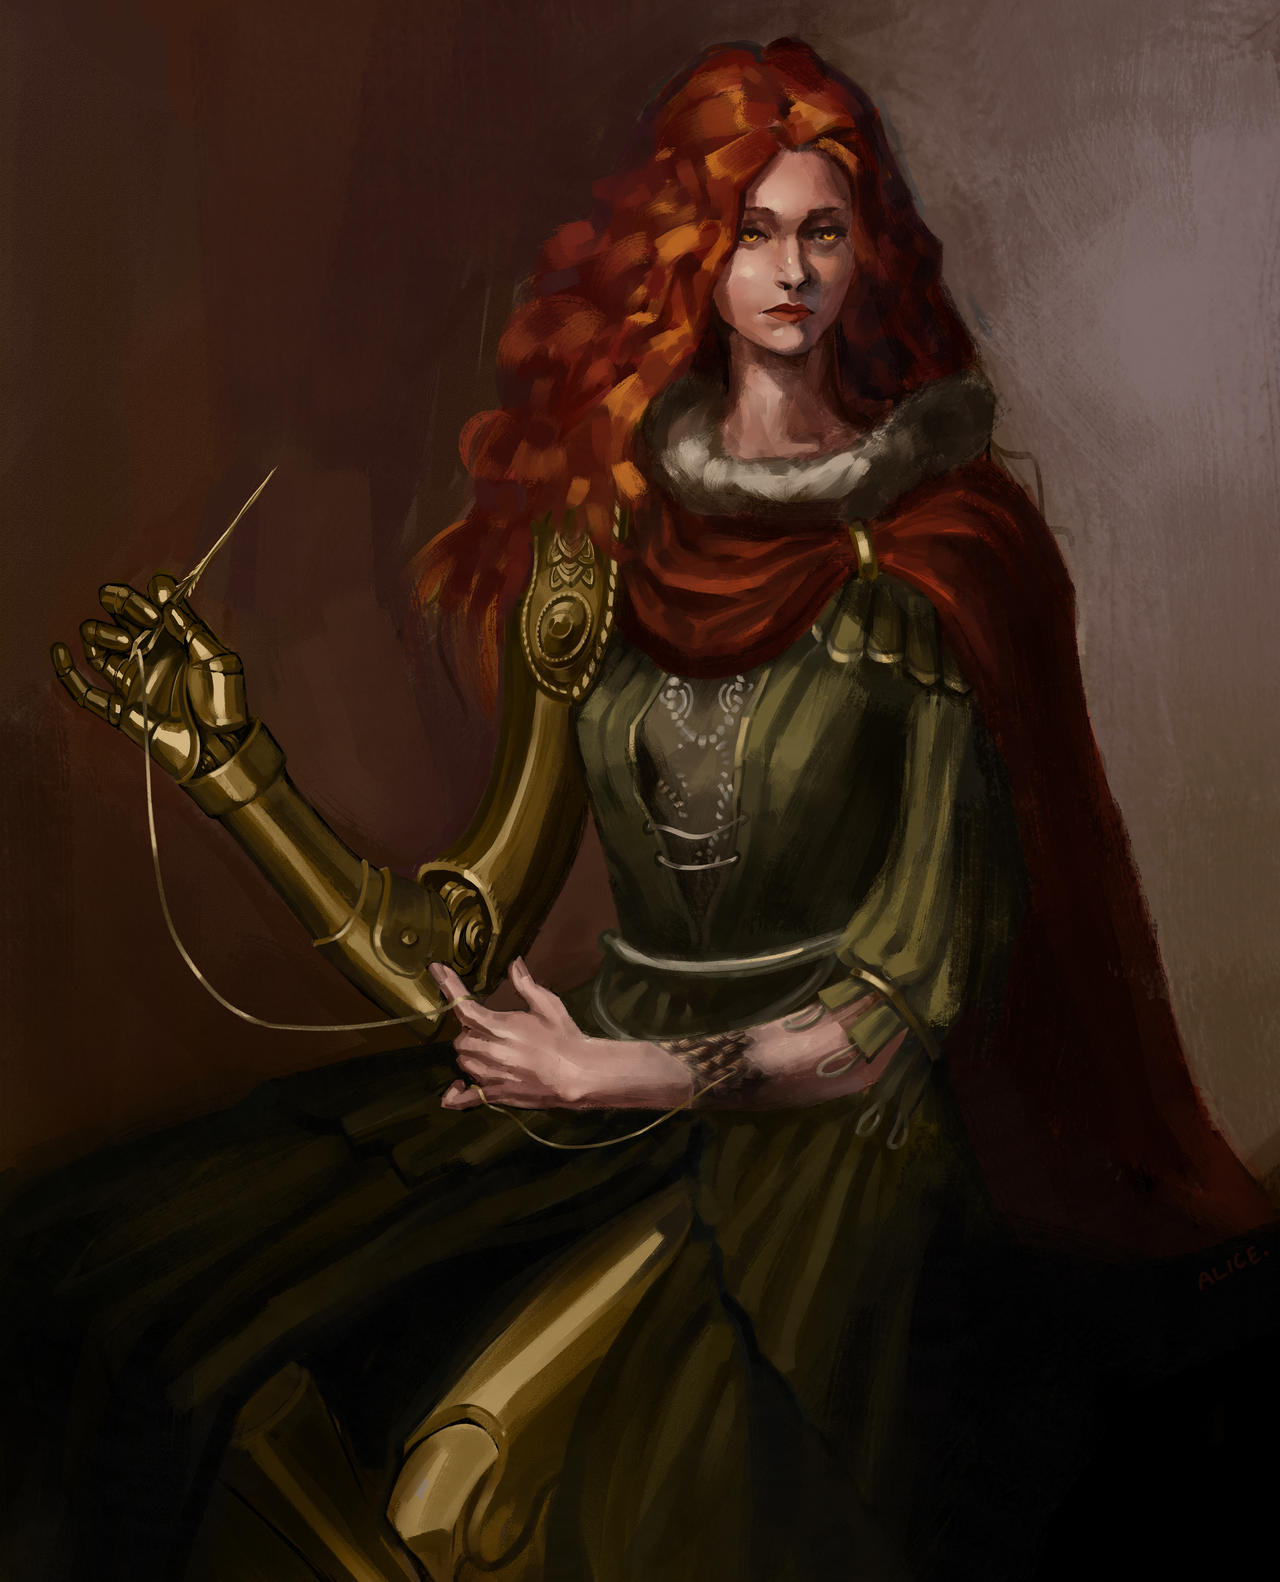 Malenia, Blade of Miquella (Elden Ring fanart) by Vessara on